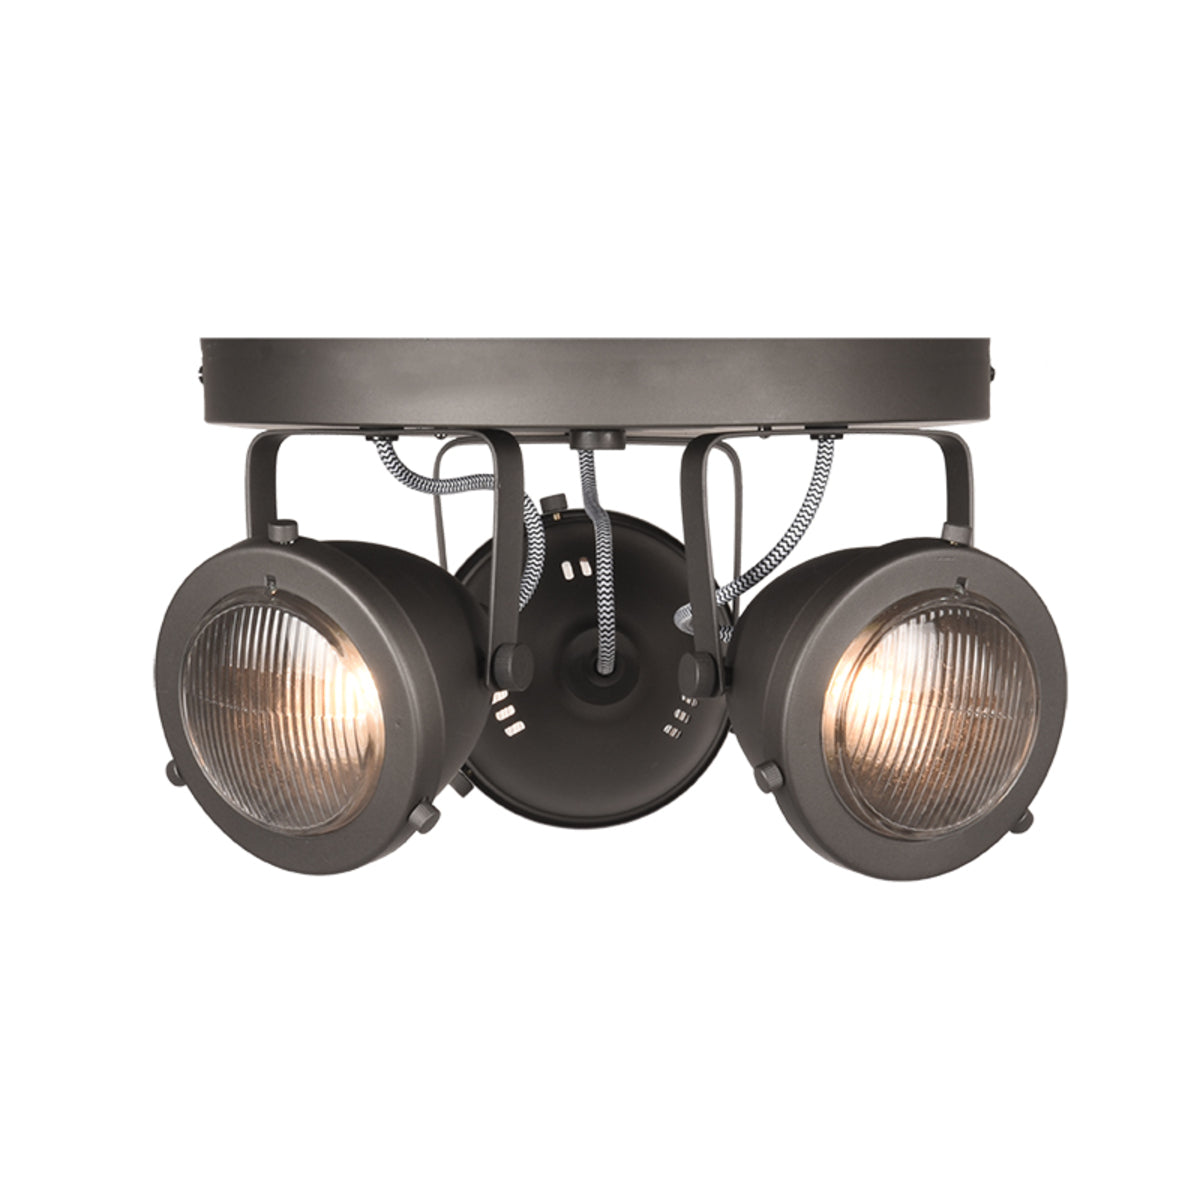 LABEL51 Spot Moto led - Burned Steel - Metal - 3 Lights